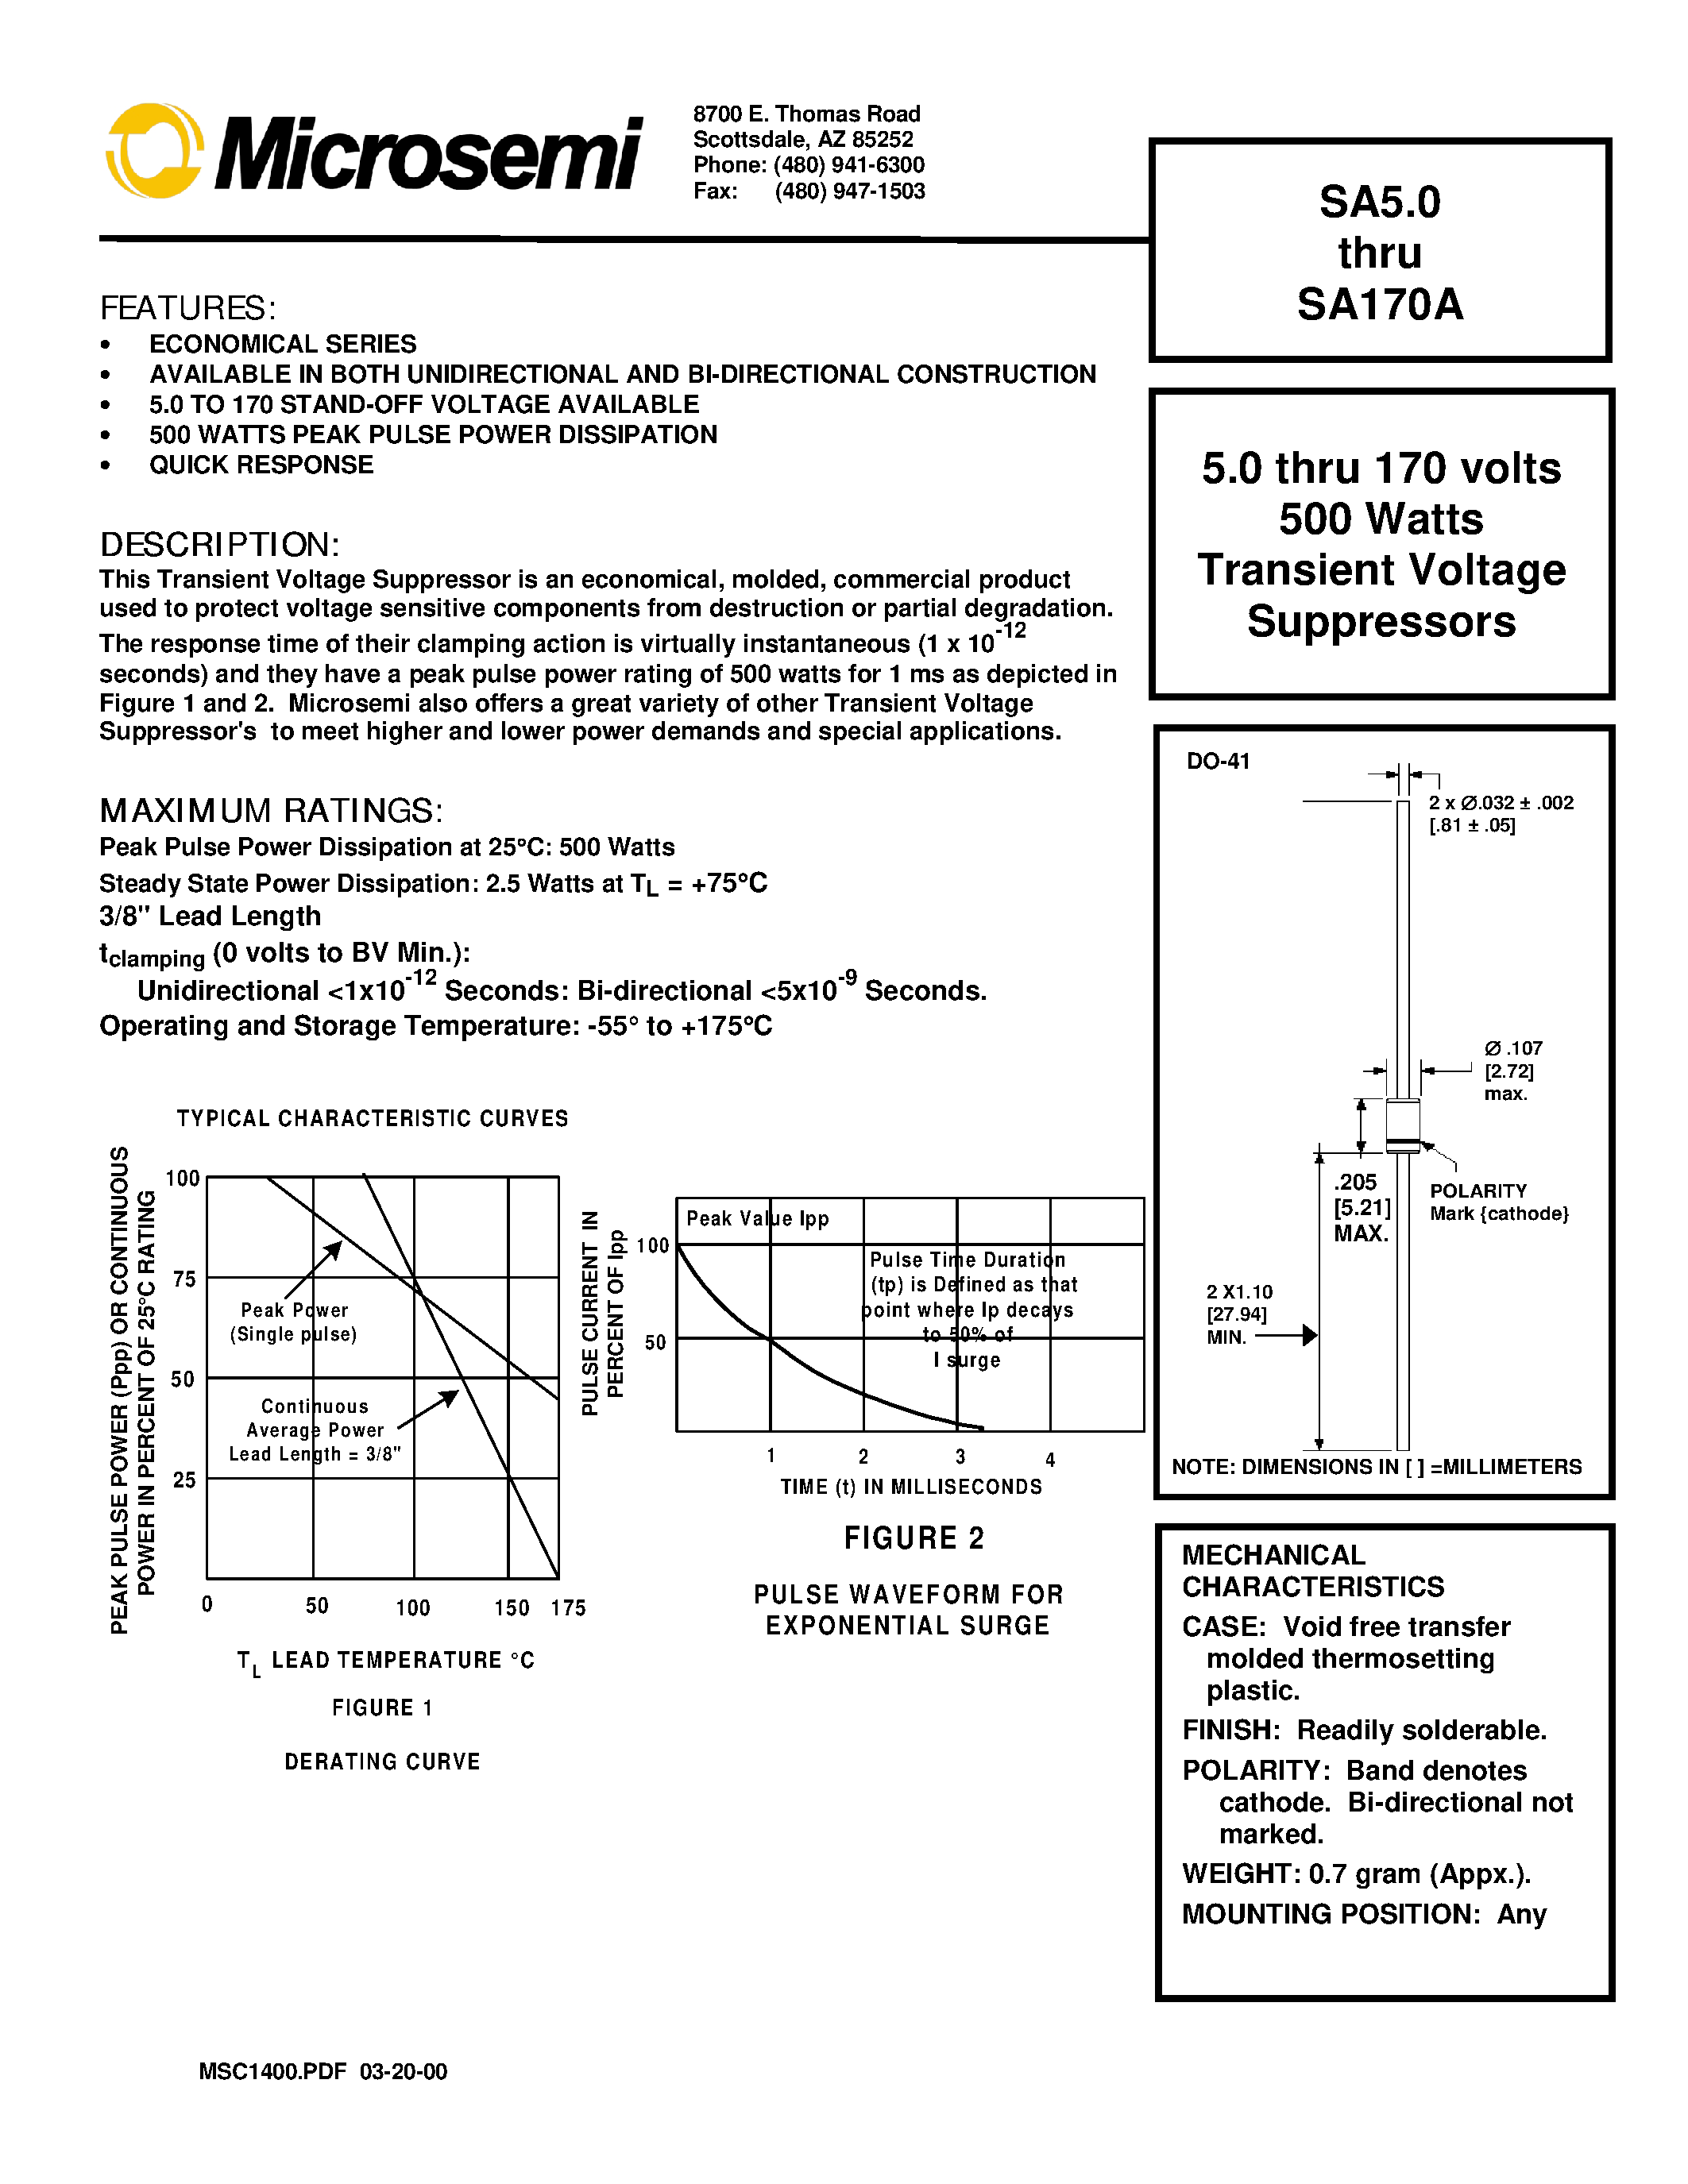 Datasheet SA28 - 5.0 thru 170 volts 500 Watts Transient Voltage Suppressors page 1